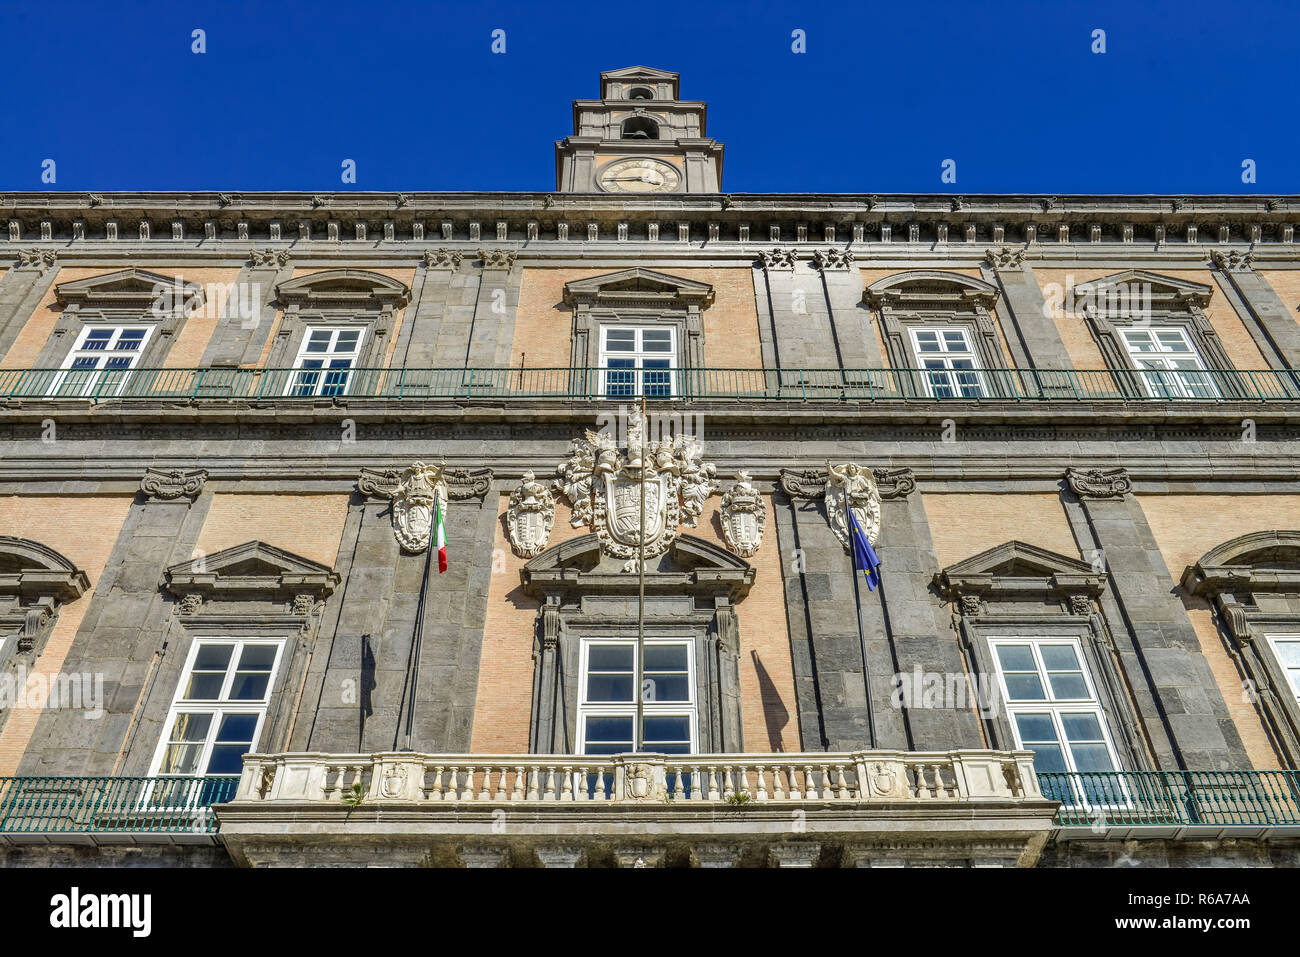 King's Palace, Palazzo Reale, Piazza del Plebescito, Neapel, Italien, Koenigspalast, Palazzo Reale, Neapel, Italien Stockfoto